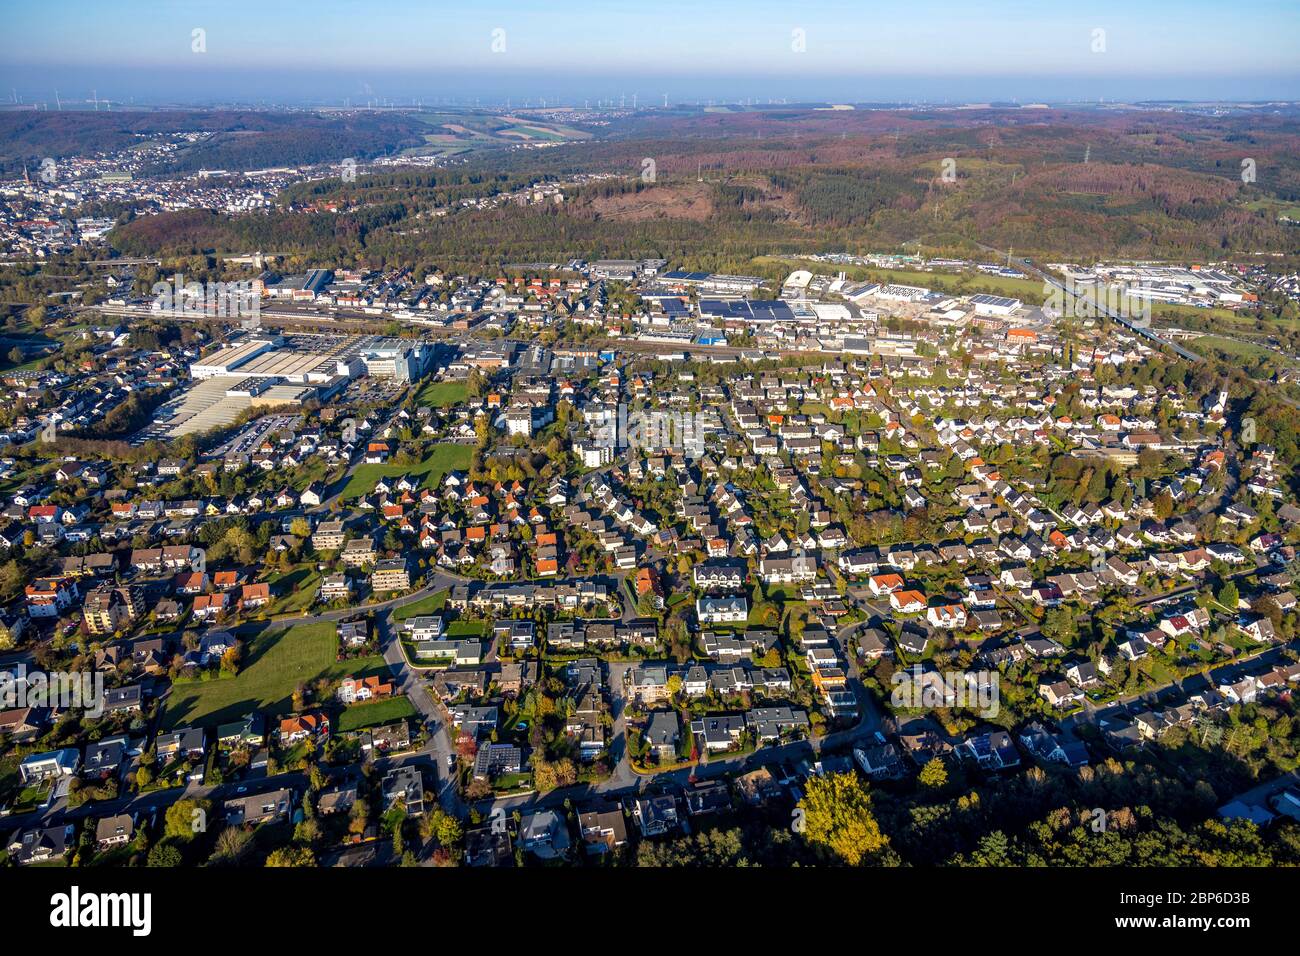 Vue aérienne, vue sur la ville de Hüsten avec des bâtiments résidentiels et zone industrielle Bahnhofstrasse, Arnsberg, pays aigre, Rhénanie-du-Nord-Westphalie, Allemagne Banque D'Images